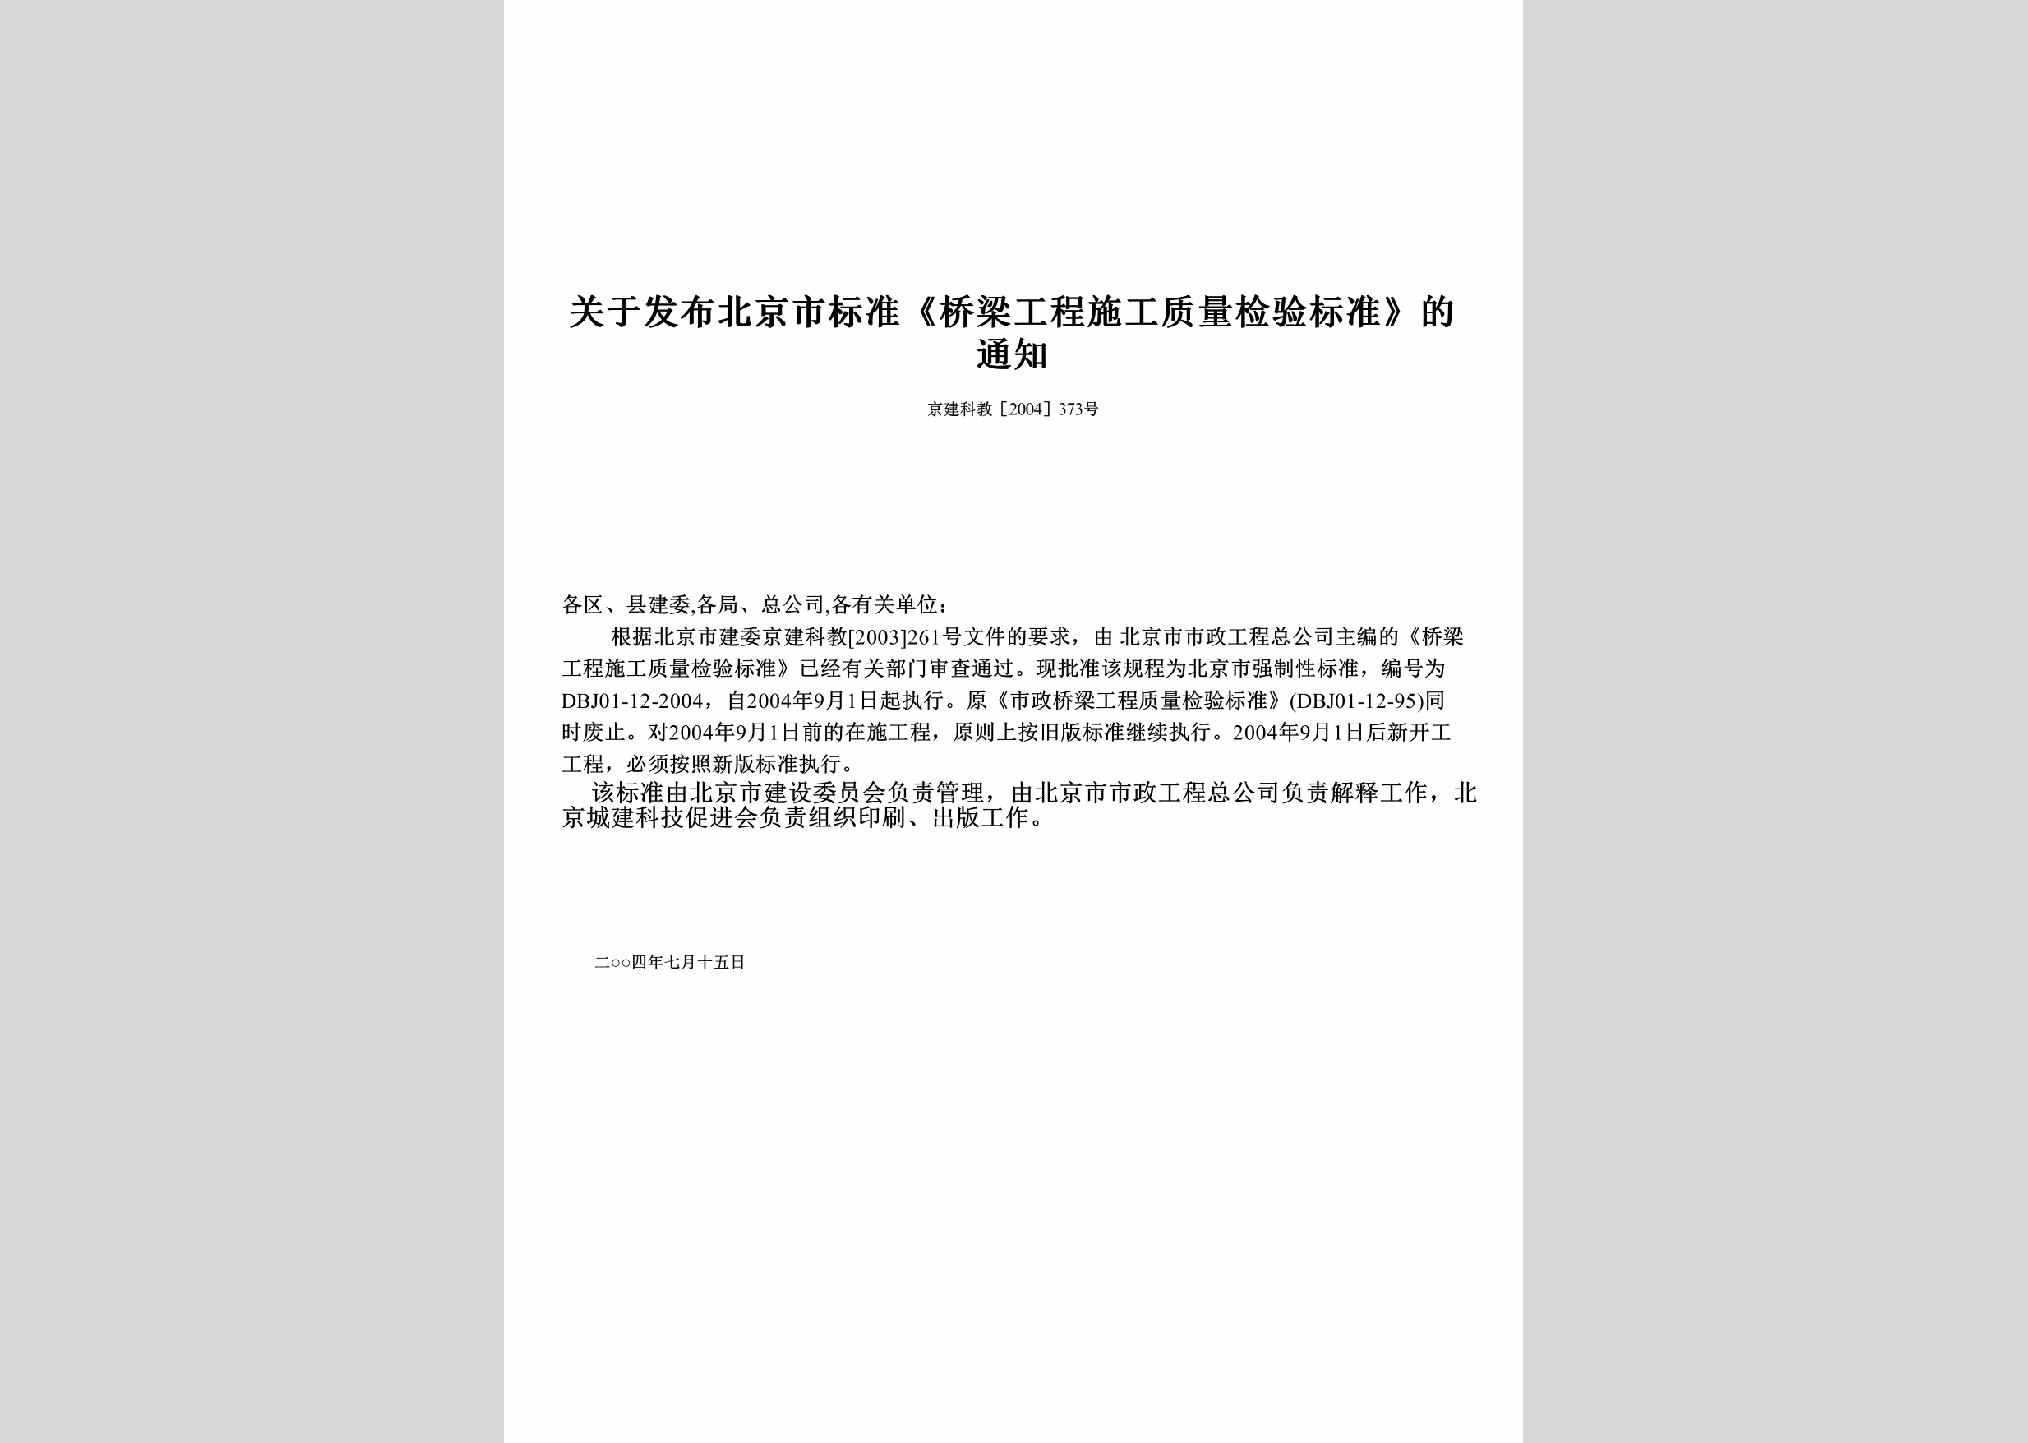 京建科教[2004]373号：关于发布北京市标准《桥梁工程施工质量检验标准》的通知